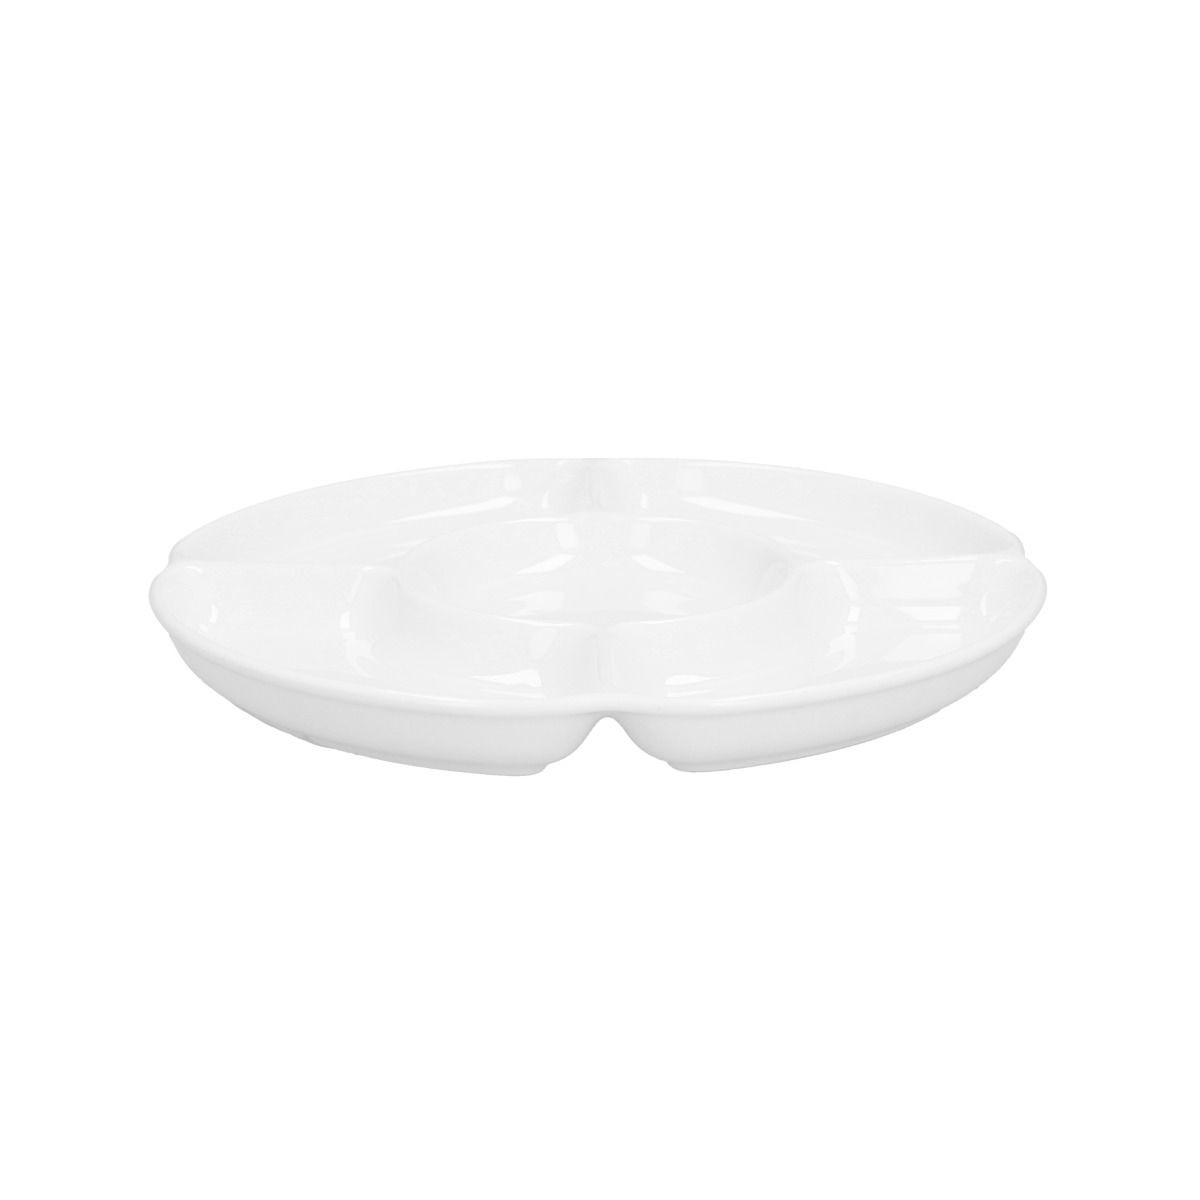 Servírovací tanier AURO biely ALL 991046